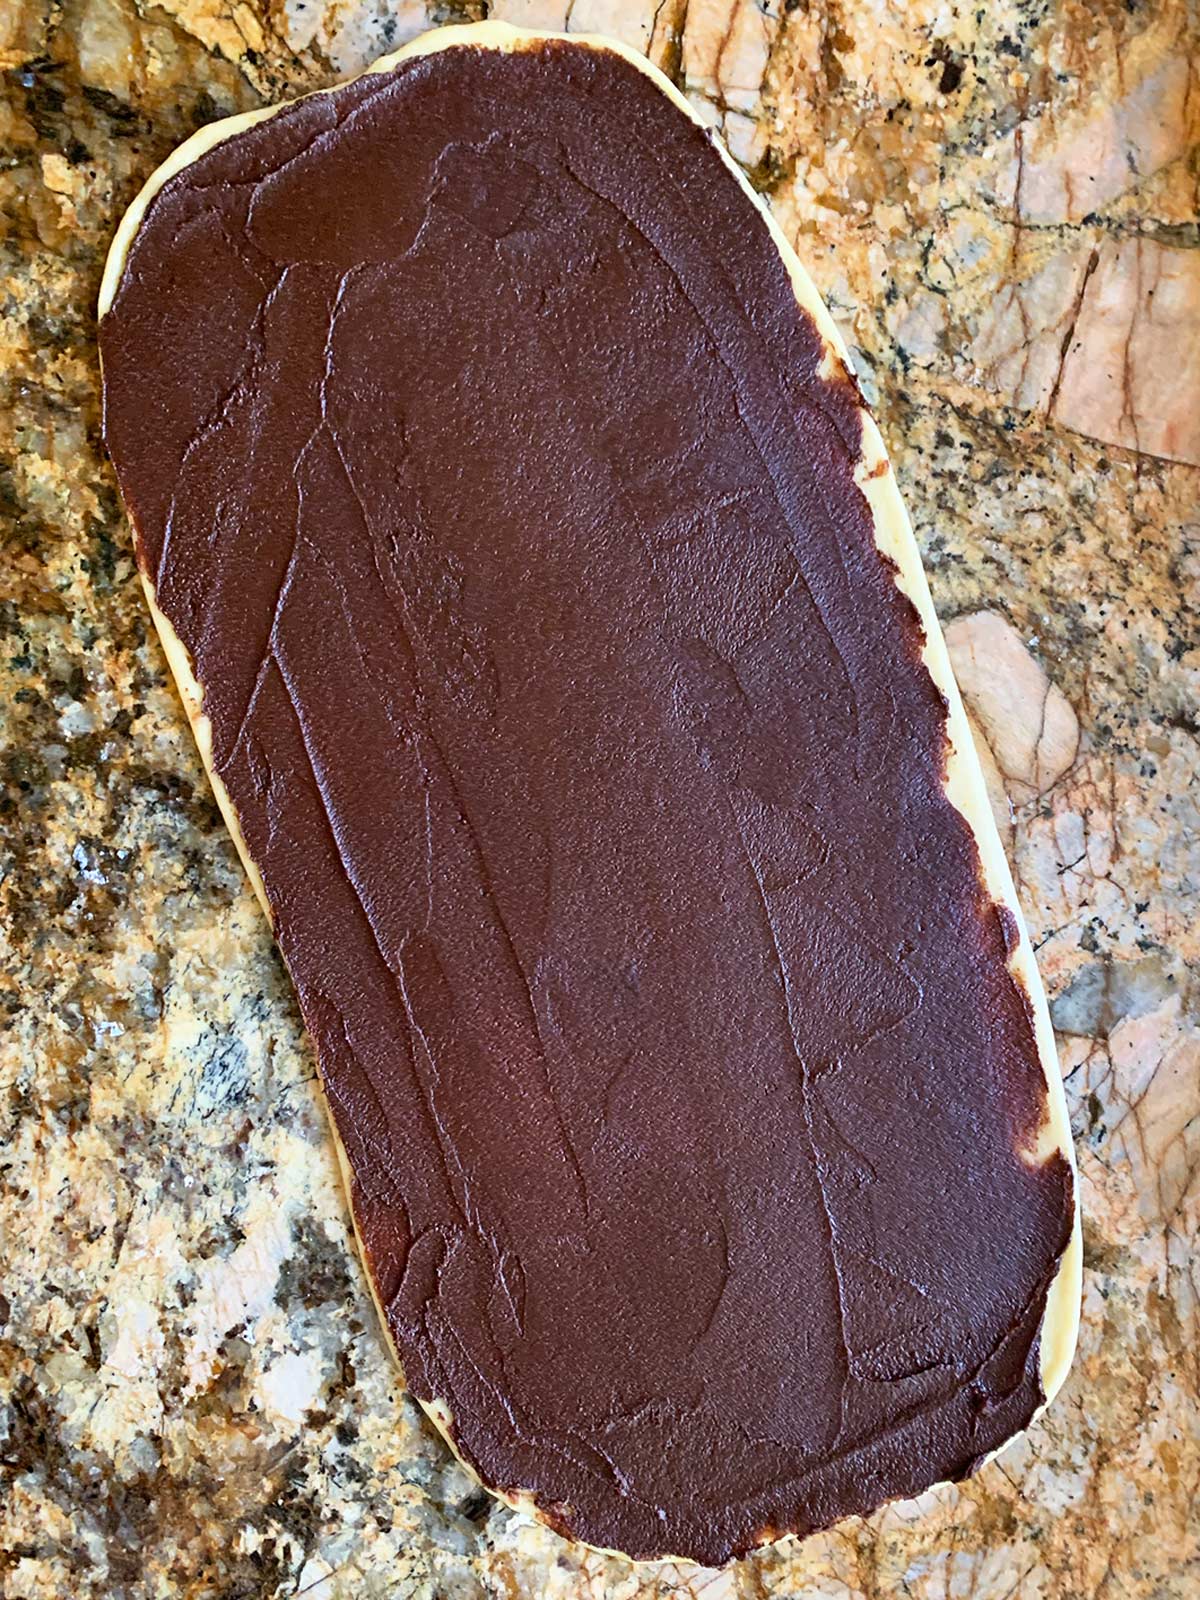 Babka dough with chocolate spread on top.